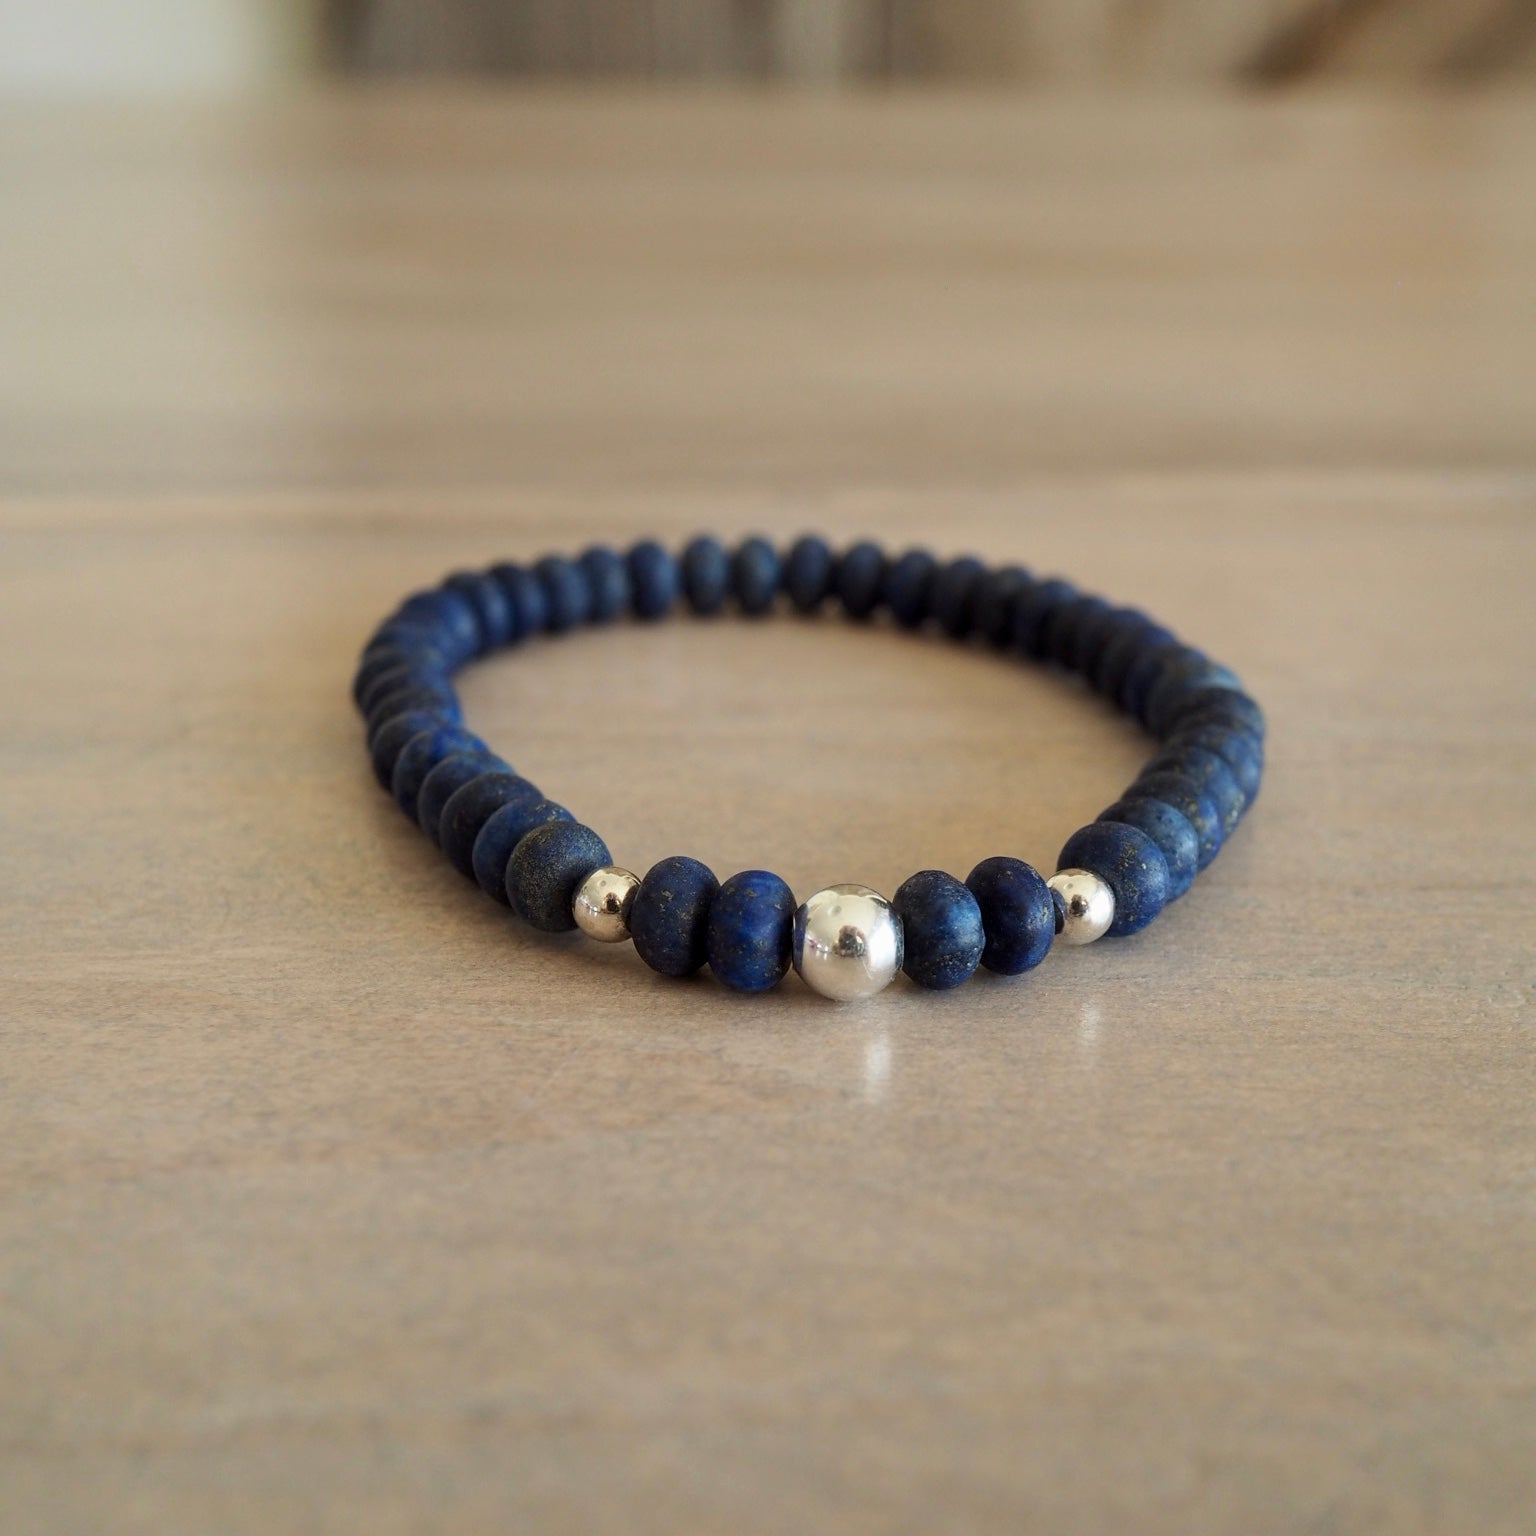 Navy Blue Lapis Lazuli Bracelet by Nancy Wallis Designs